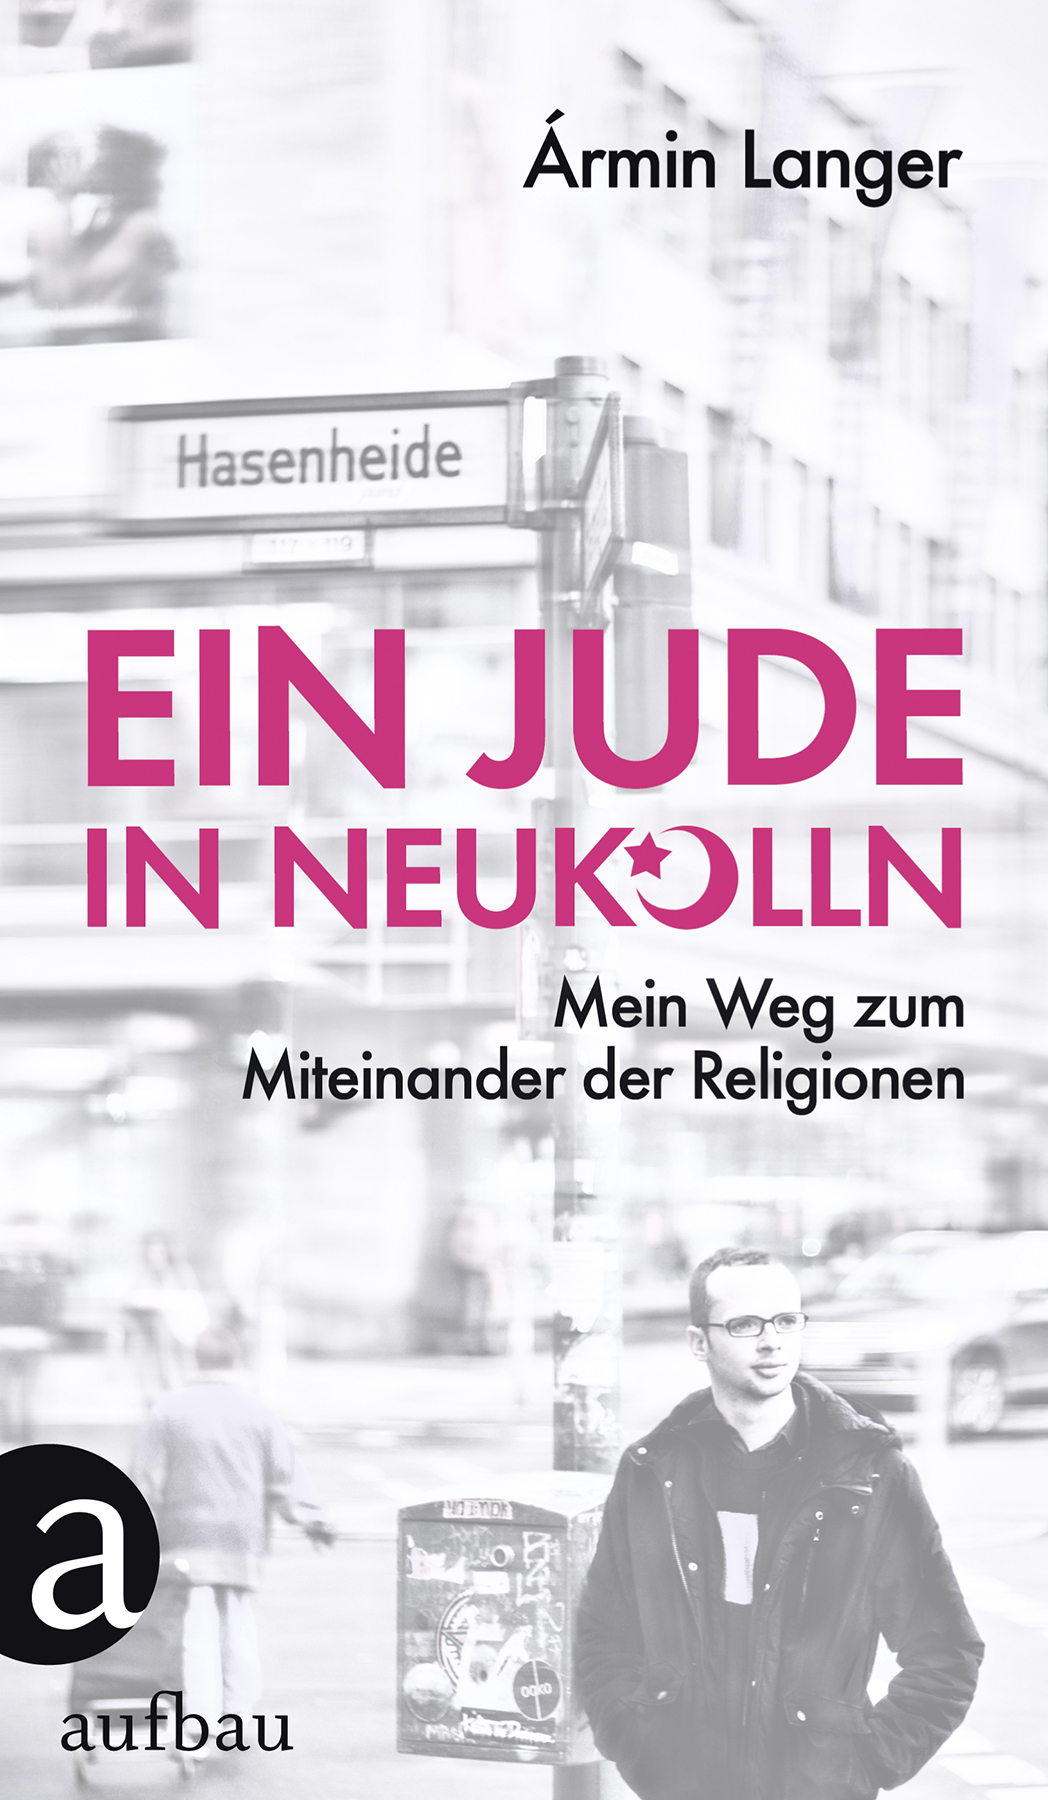 Buch-Cover Armin Langer: "Ein Jude in Neukölln: Mein Weg zum Miteinander der Religionen" im Aufbau-Verlag